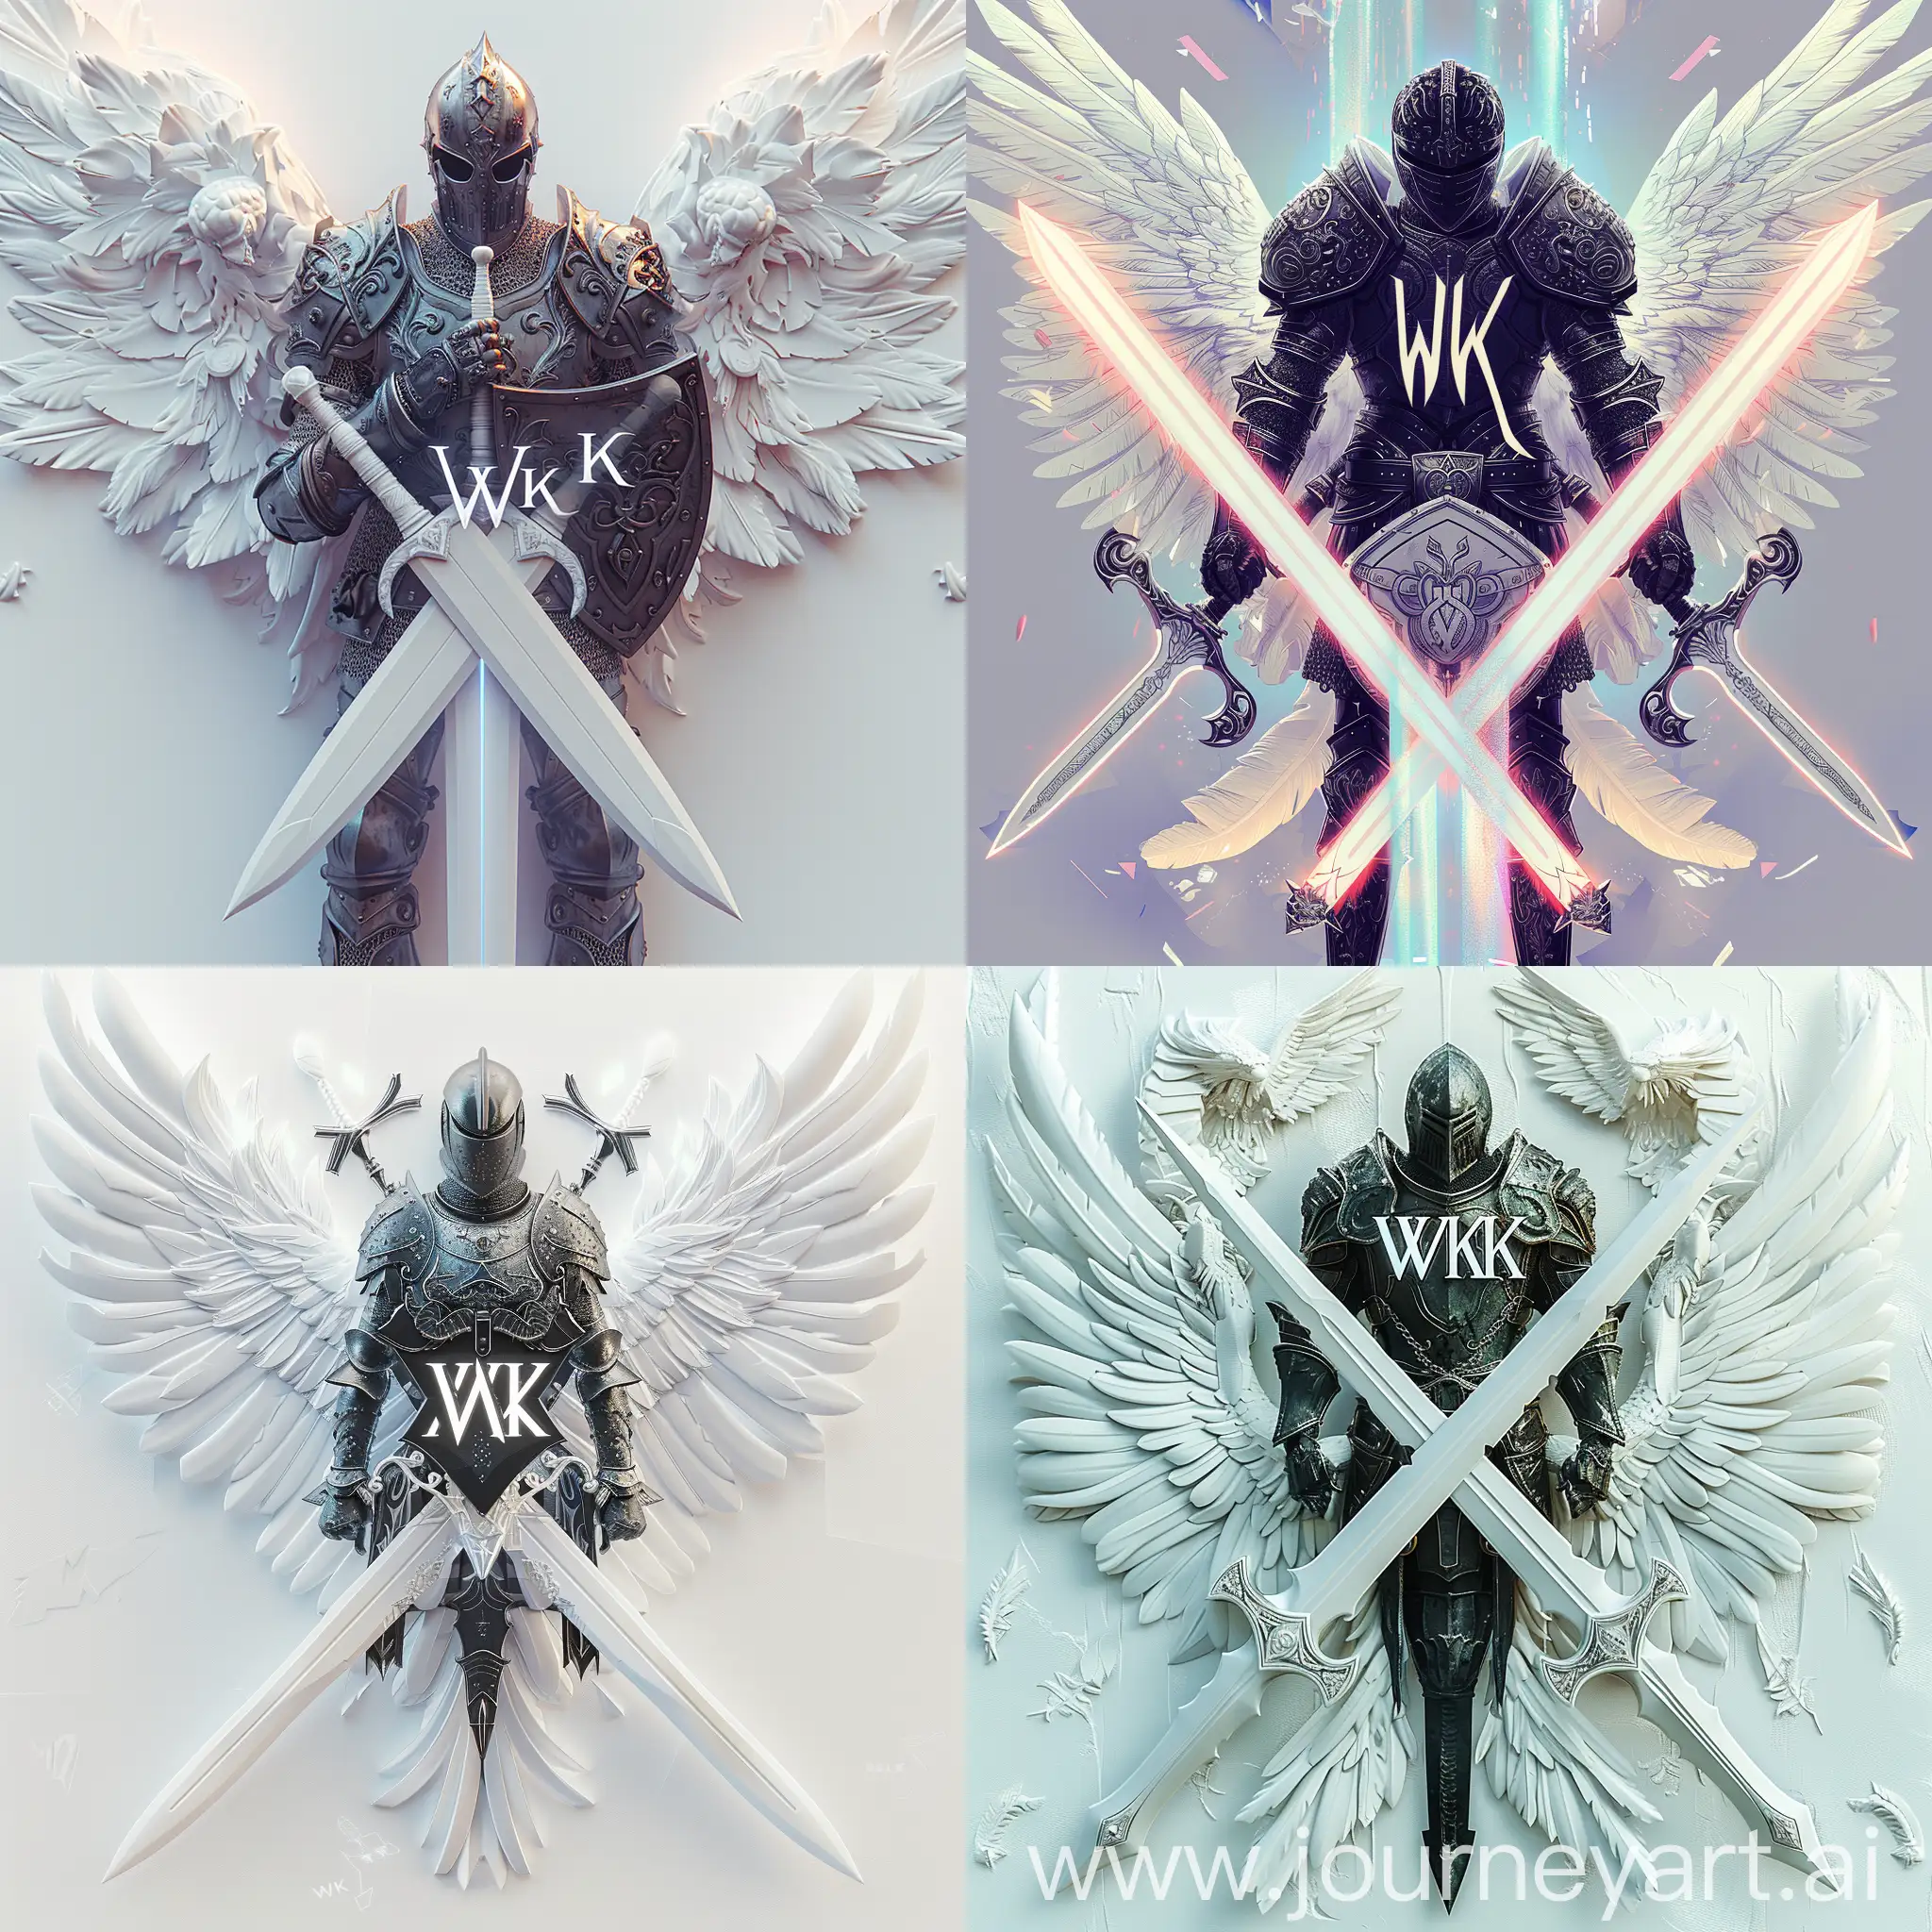 cool color palette, holography, логотип "WK", где буквы "WK" стилизованы в форме двух переплетающихся мечей с орнаментами на лезвиях, белые мечи, белые крылья, между мечами изображен черный рыцарь в боевой позе держащий в руках щит и меч, рыцарь представлен в доспехах с символикой, отражающей его мощь и благородство, цветовая гамма белый мечи, черный рыцаря, готический шрифт "WK" в форме мечей, --quality 3 --s 300